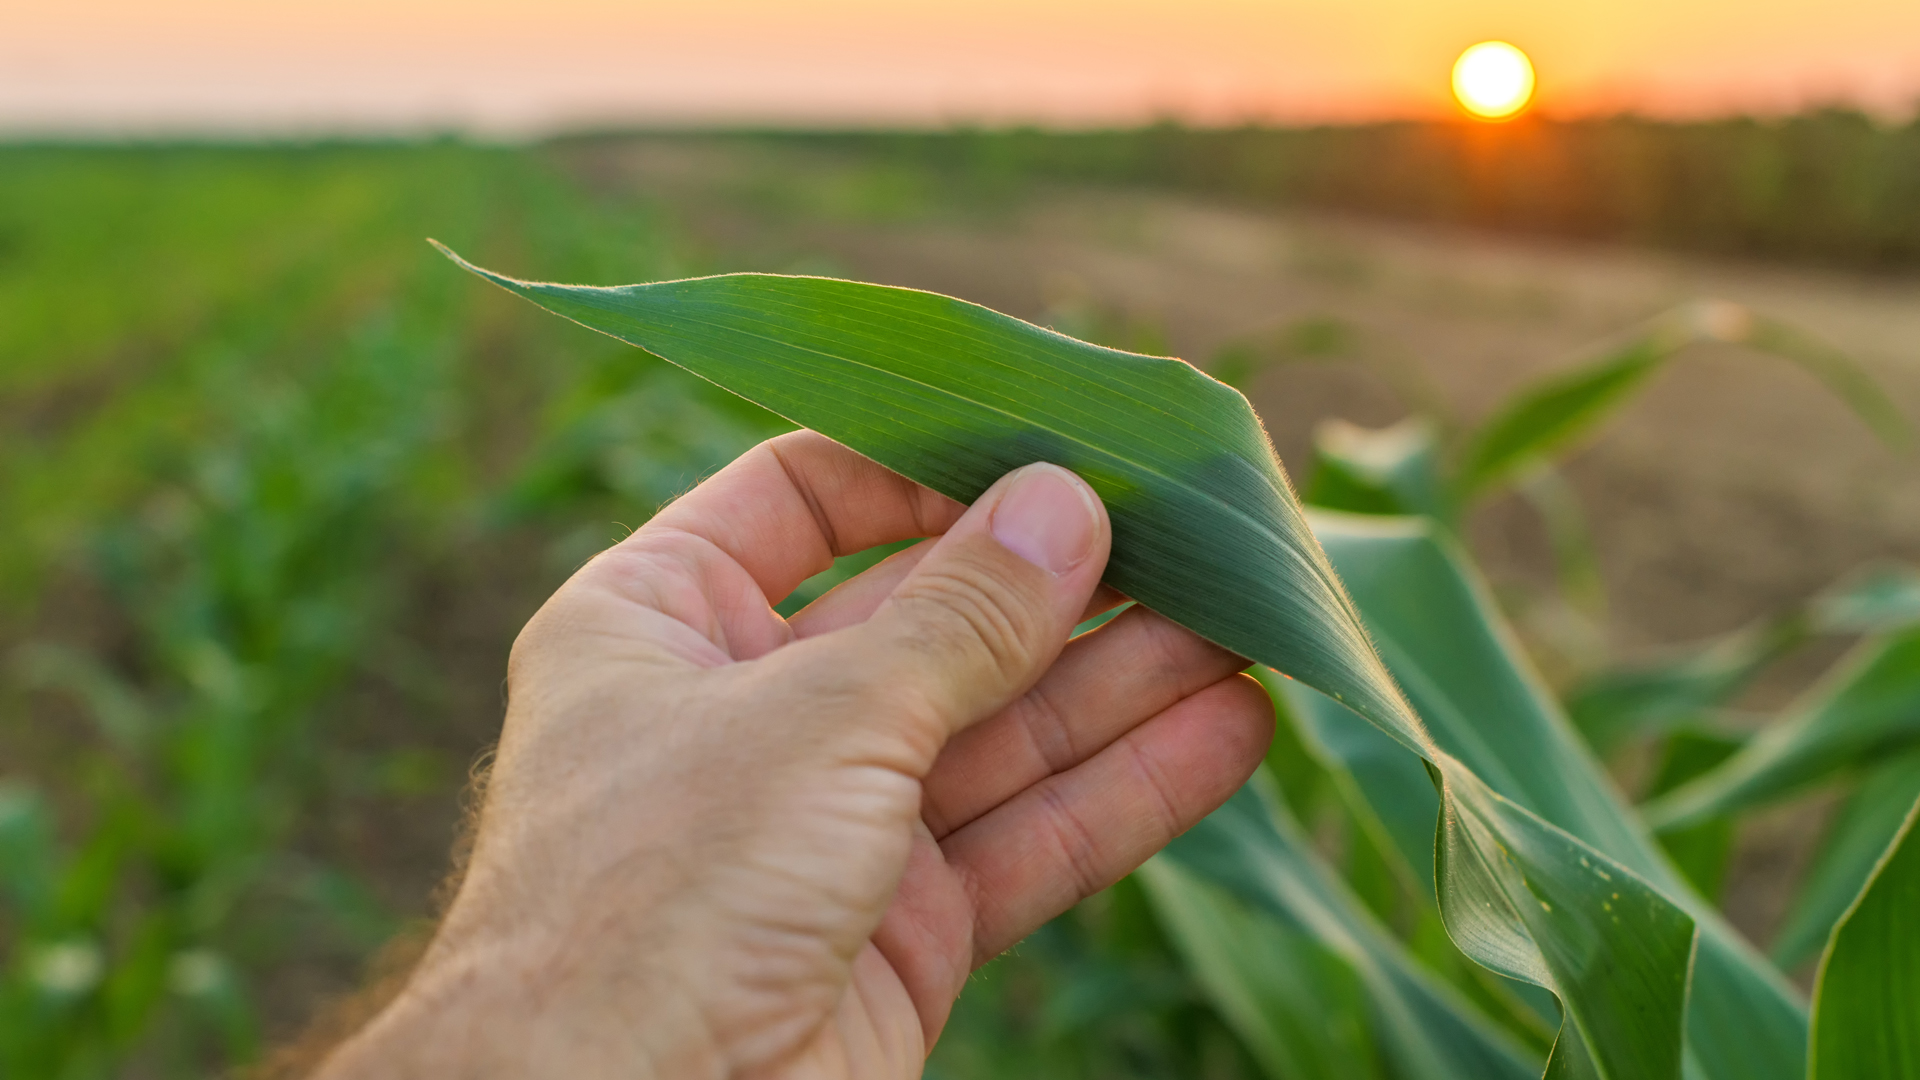 El maíz tardío es una de las innovaciones más relevantes del cultivo y de la producción agrícola de los últimos años